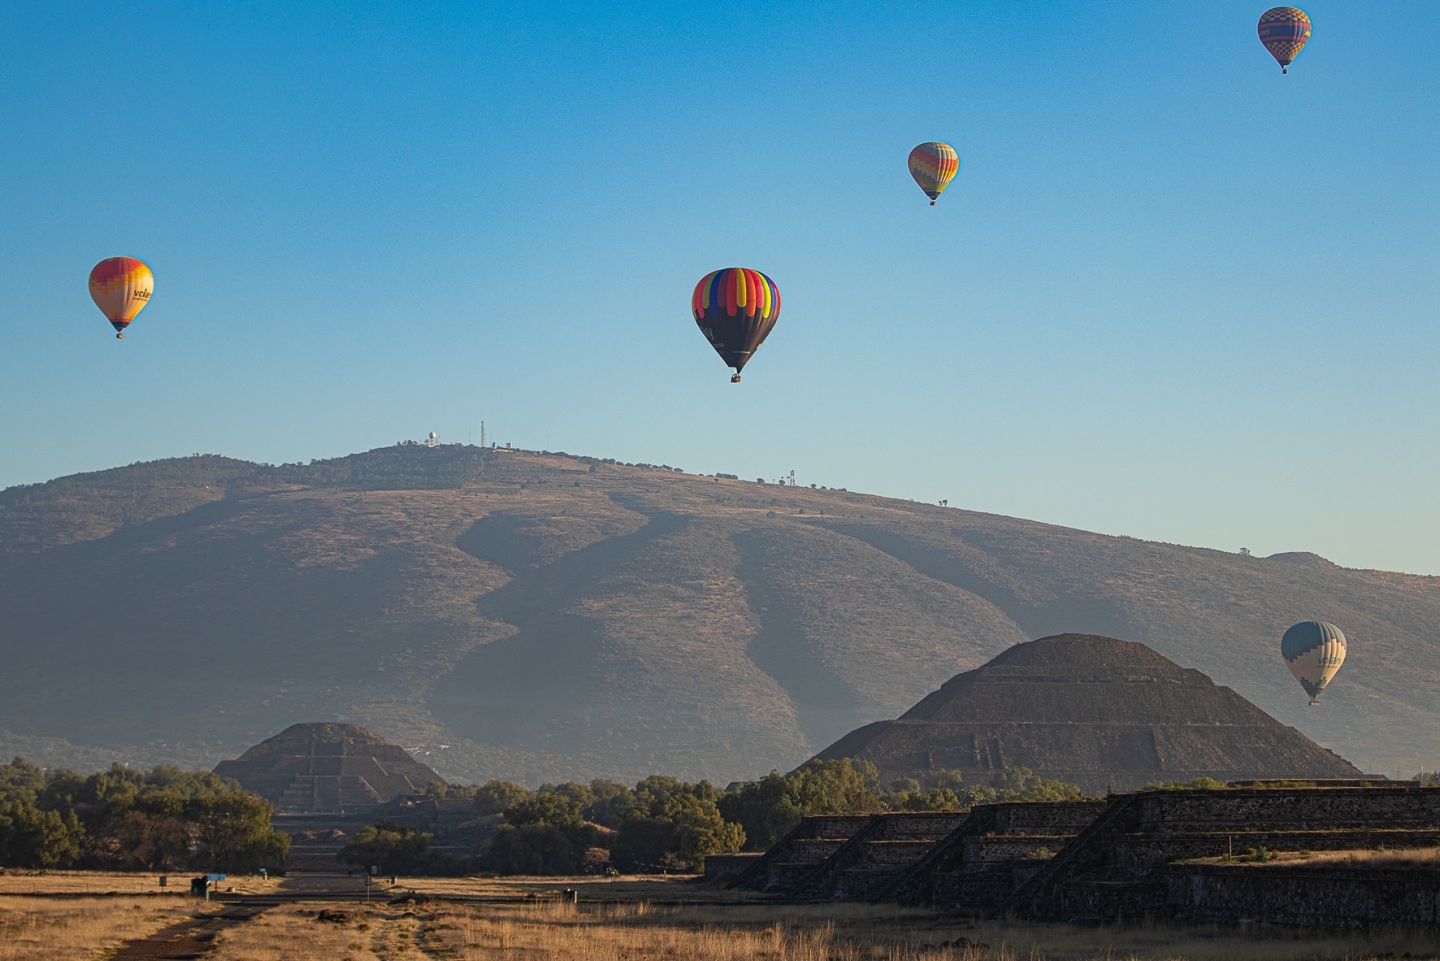  Recomendaciones para volar en globo aerostático en Teotihuacán